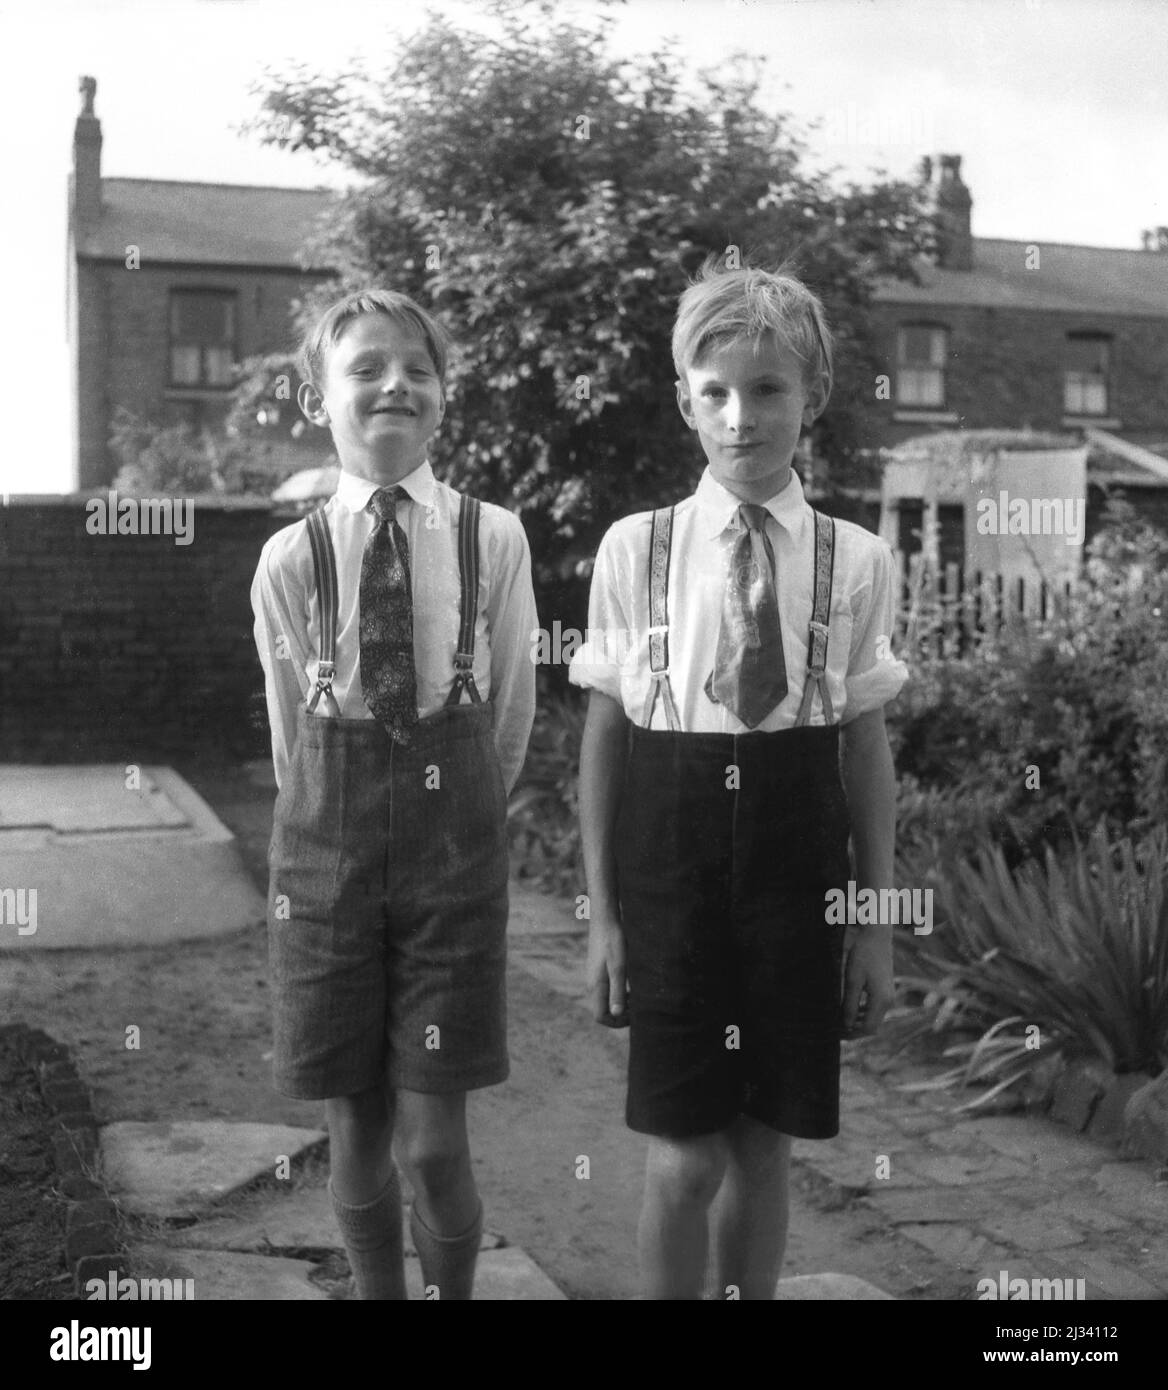 1960s, historique, deux jeunes garçons, frères, debout à l'extérieur dans  un jardin à l'arrière pour leur photo, portant une chemise et des cravates  et un pantalon court, tenu par des bretelles, Stockport,